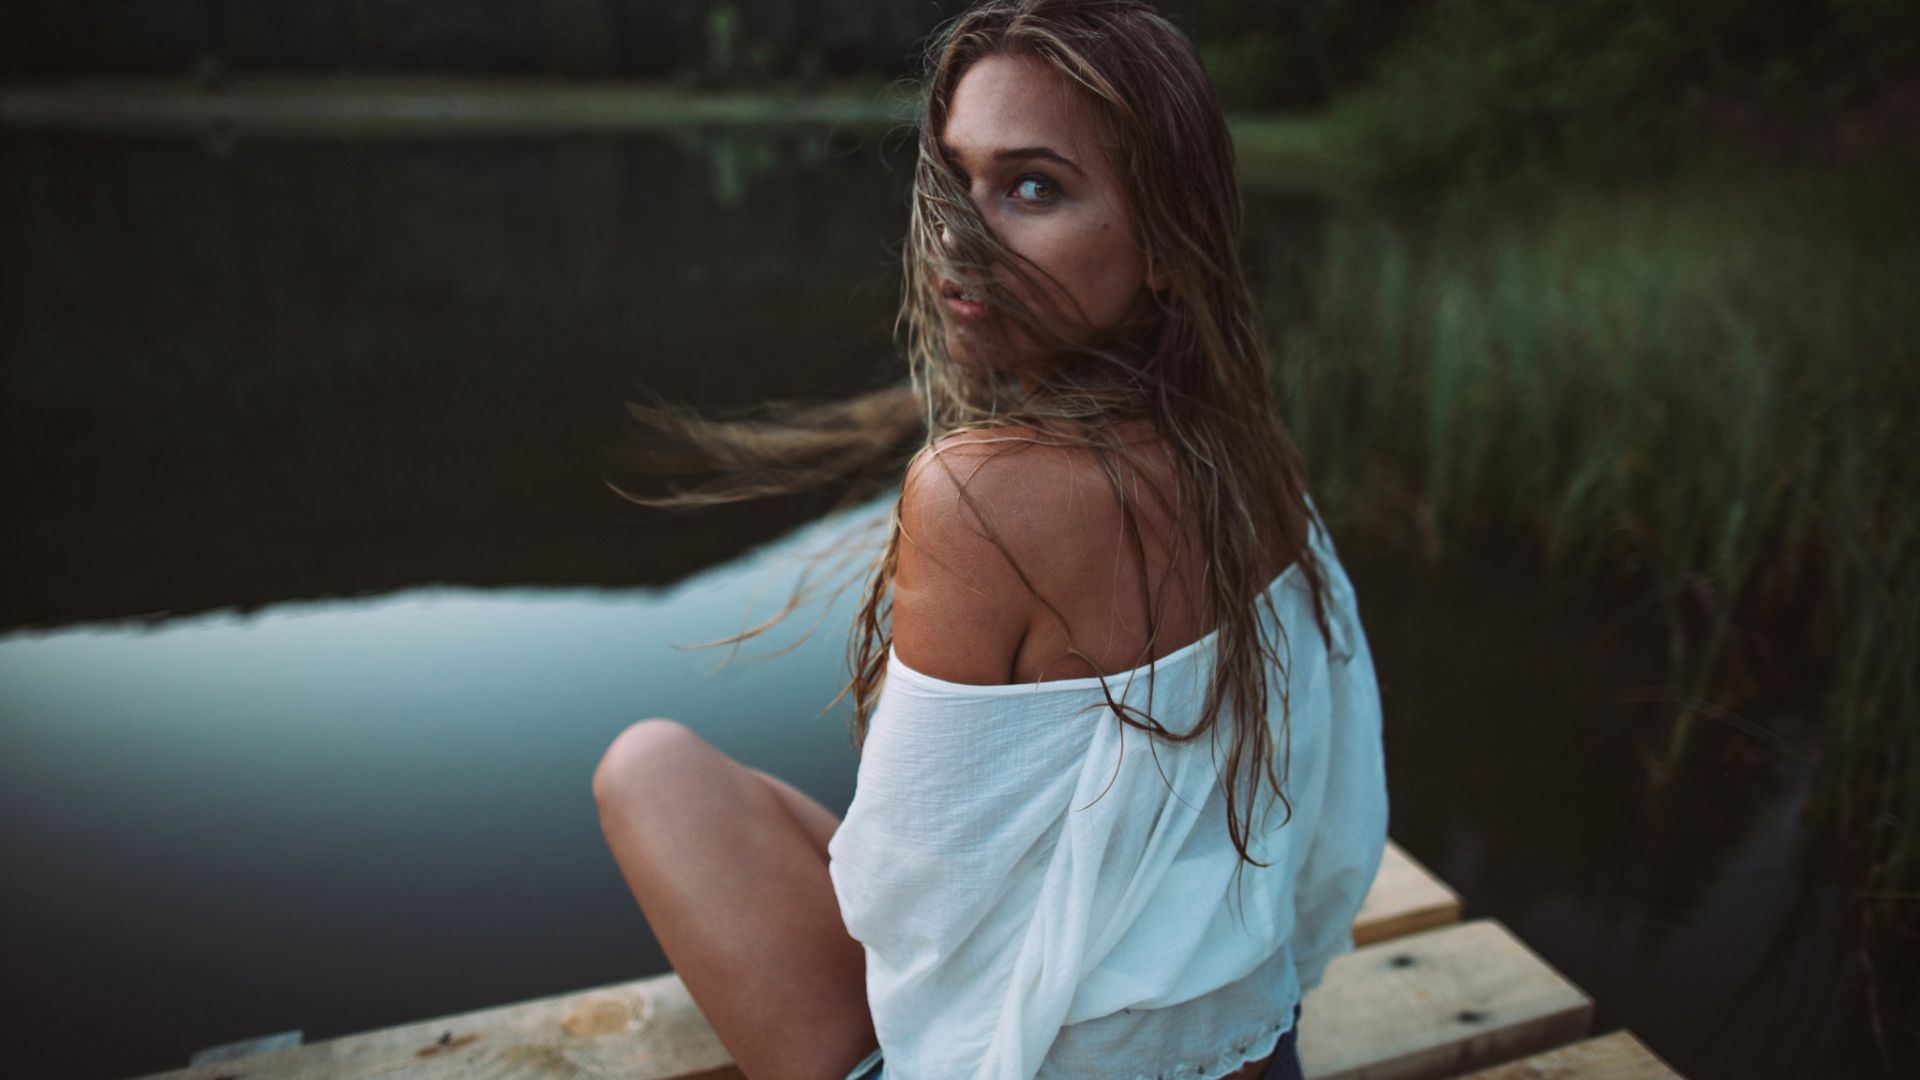 Wallpaper Dock, girl model, sitting, outdoor, hair on face